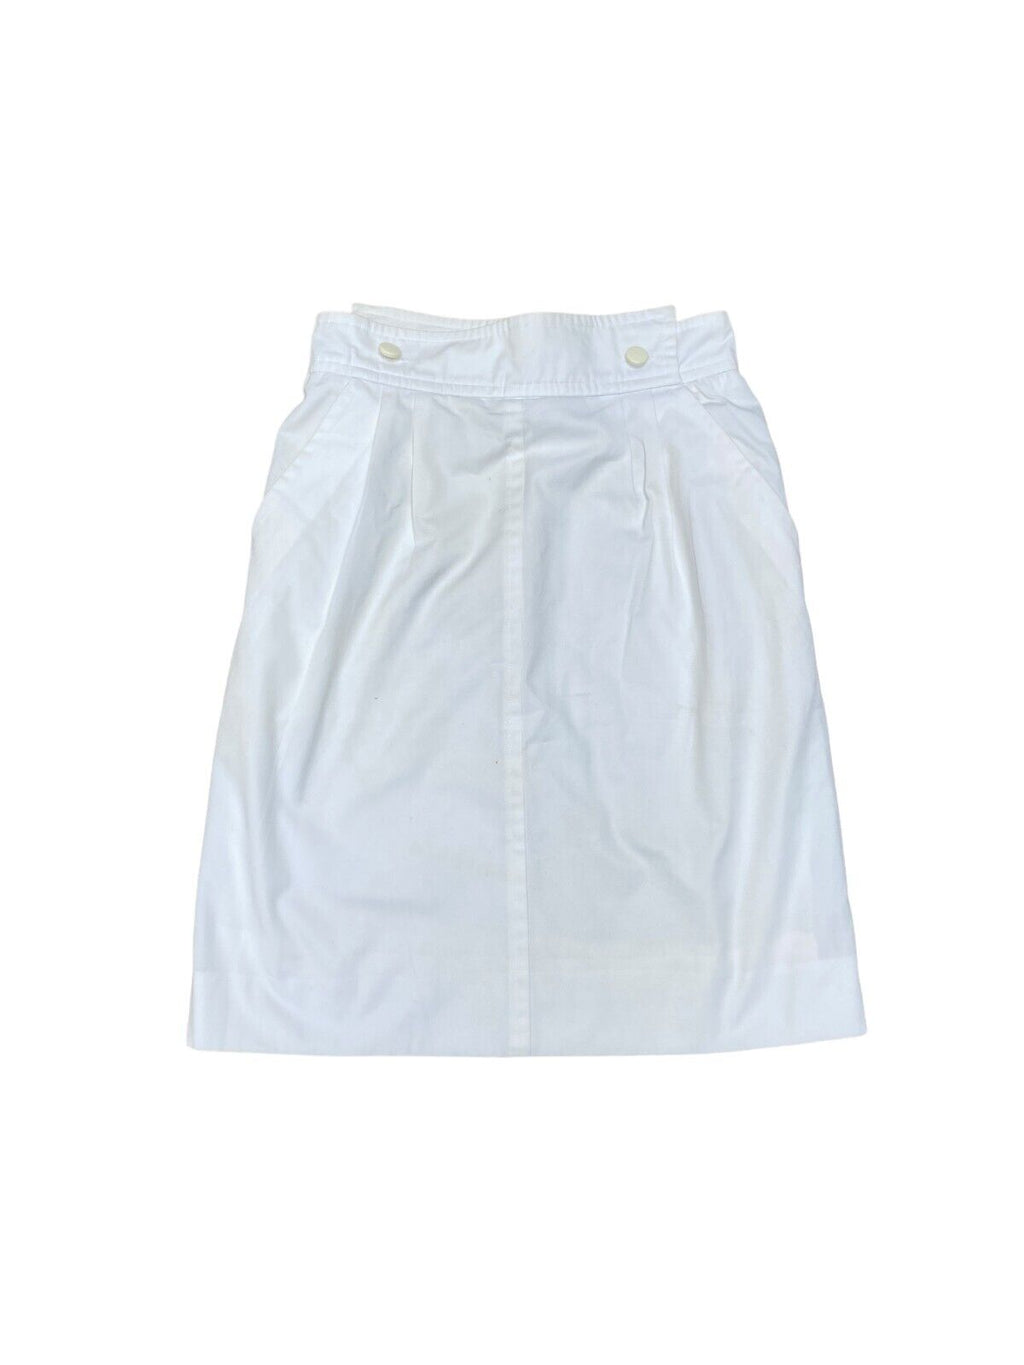 Vintage White Skirt